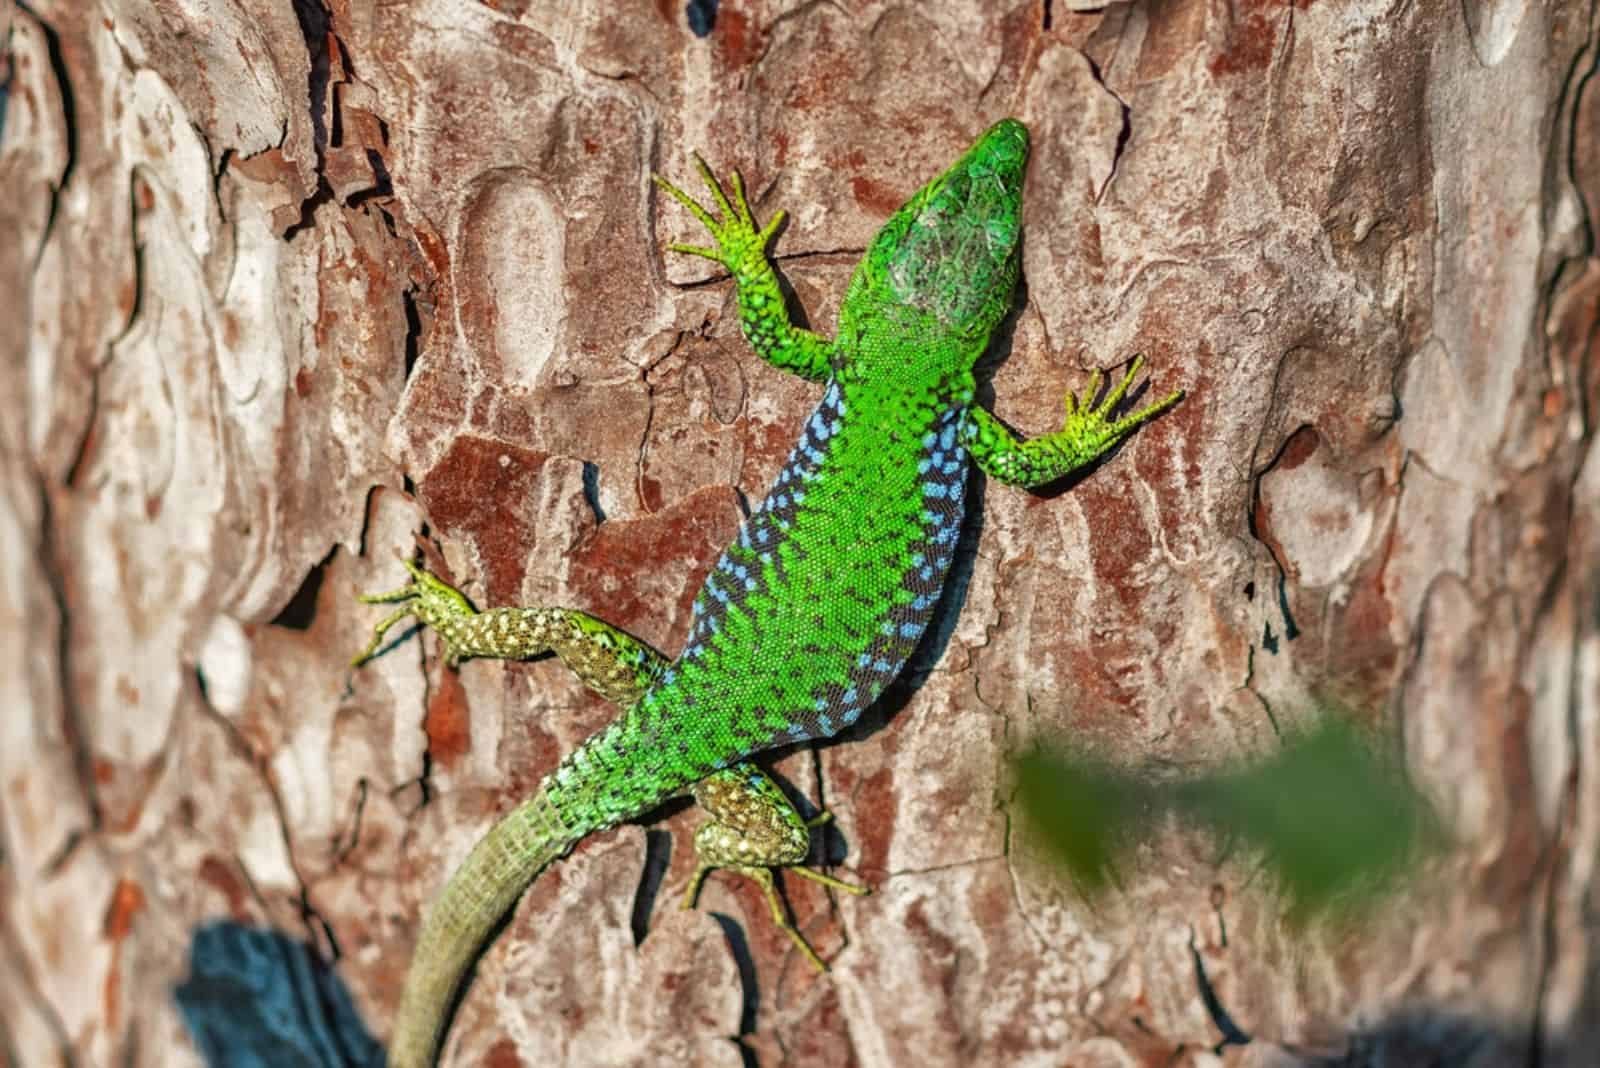 lizard basking on a tree trunk